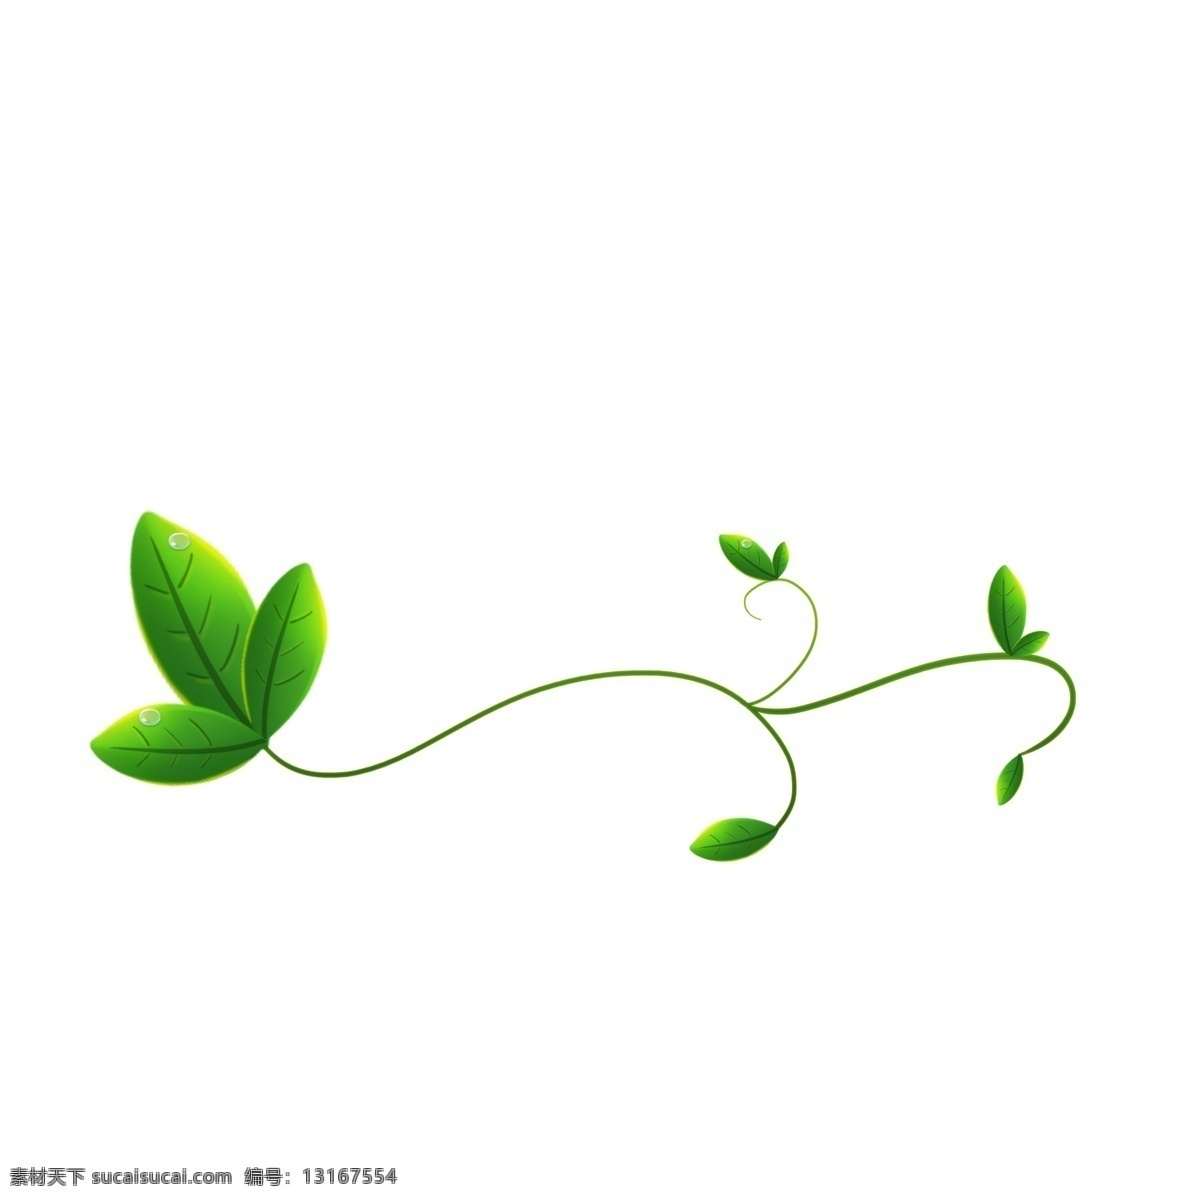 绿叶 唯美 绿色 装饰 春日气息 嫩芽 植物手绘 叶子装饰 清新 春夏海报通用 春夏时节通用